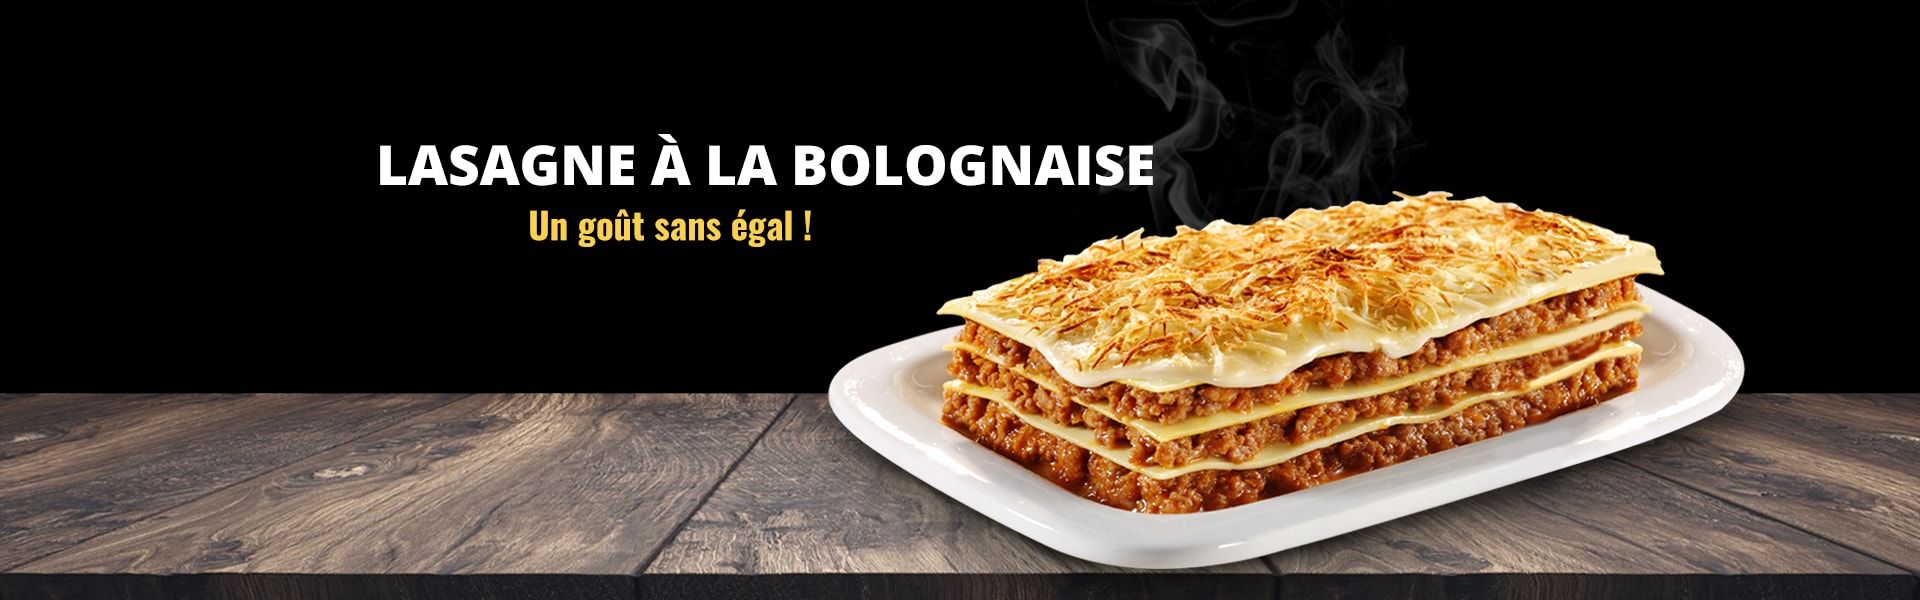 commander lasagne a la bolognaise 